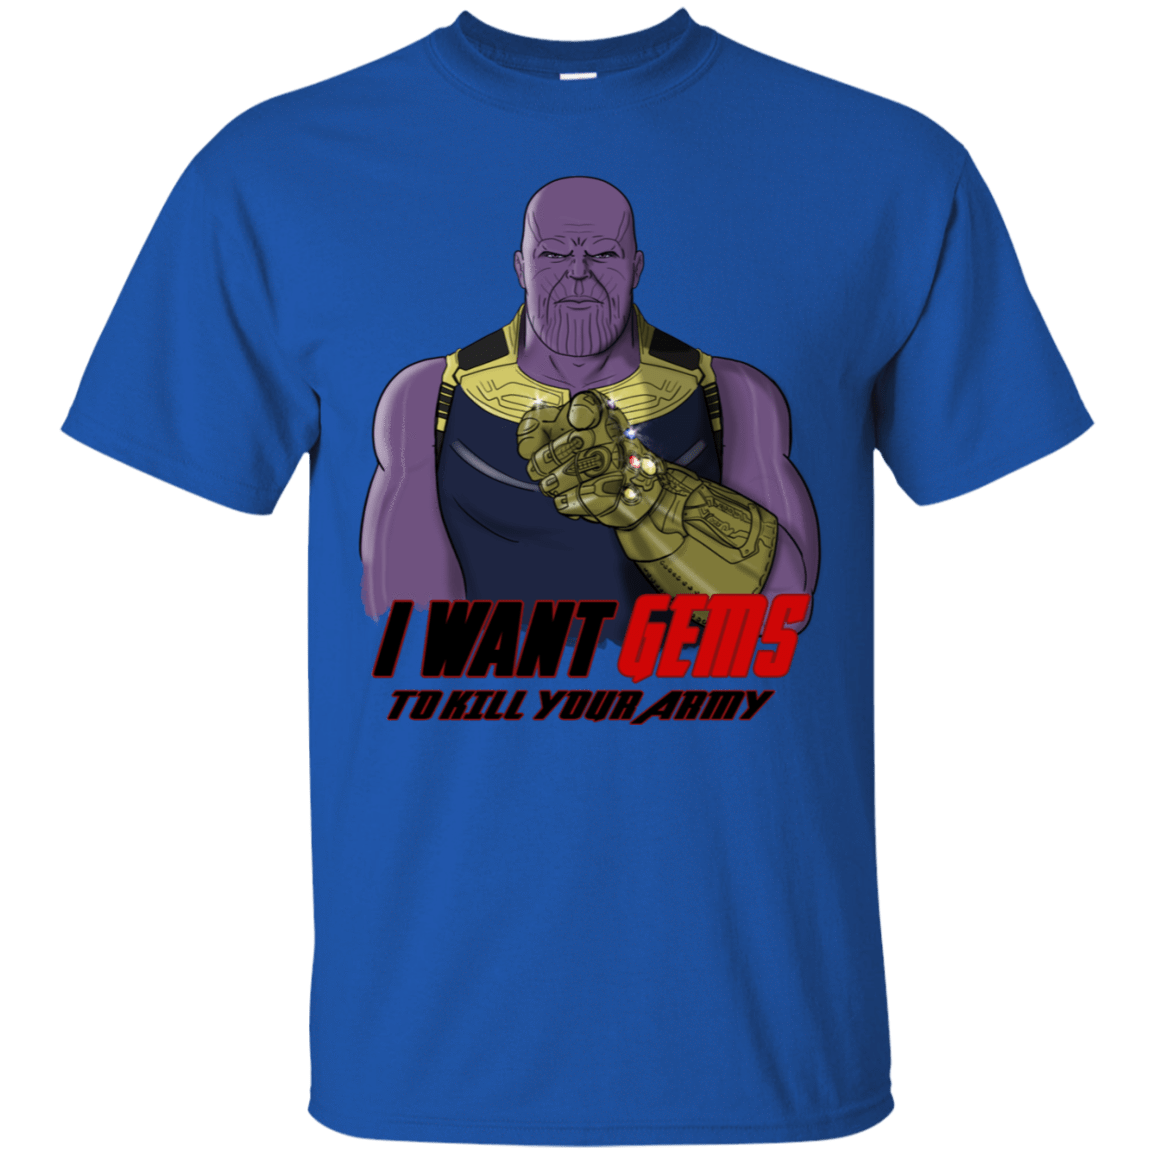 T-Shirts Royal / S Thanos Sam T-Shirt